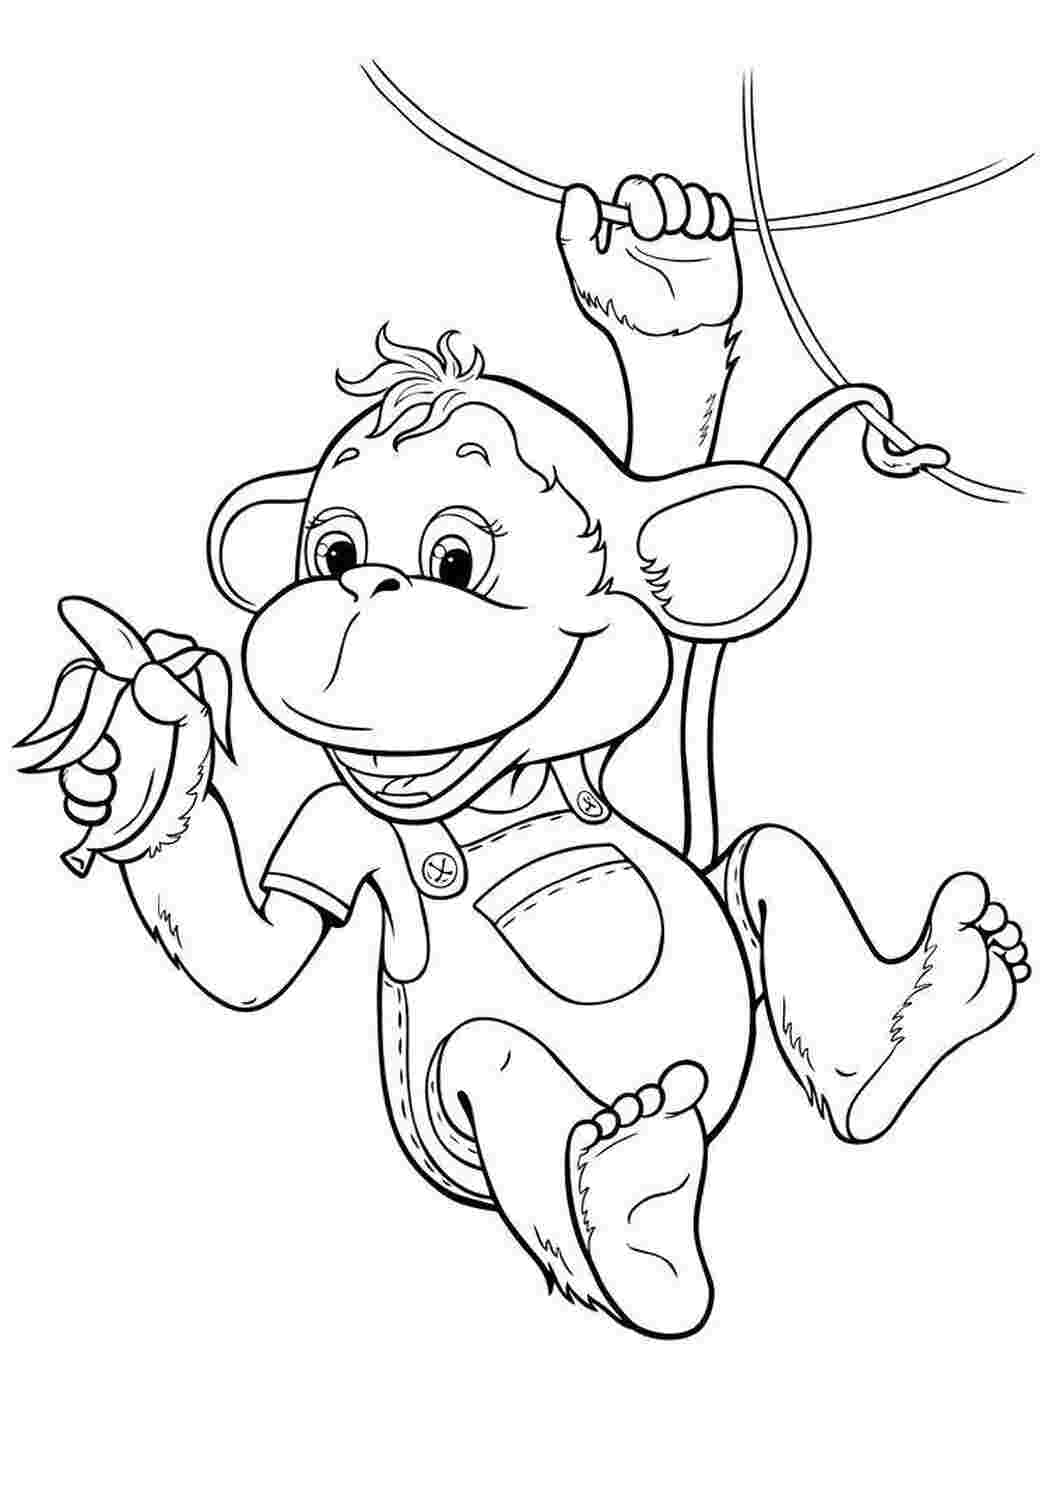 Книжка-раскраска для детей: обезьяна с бананом